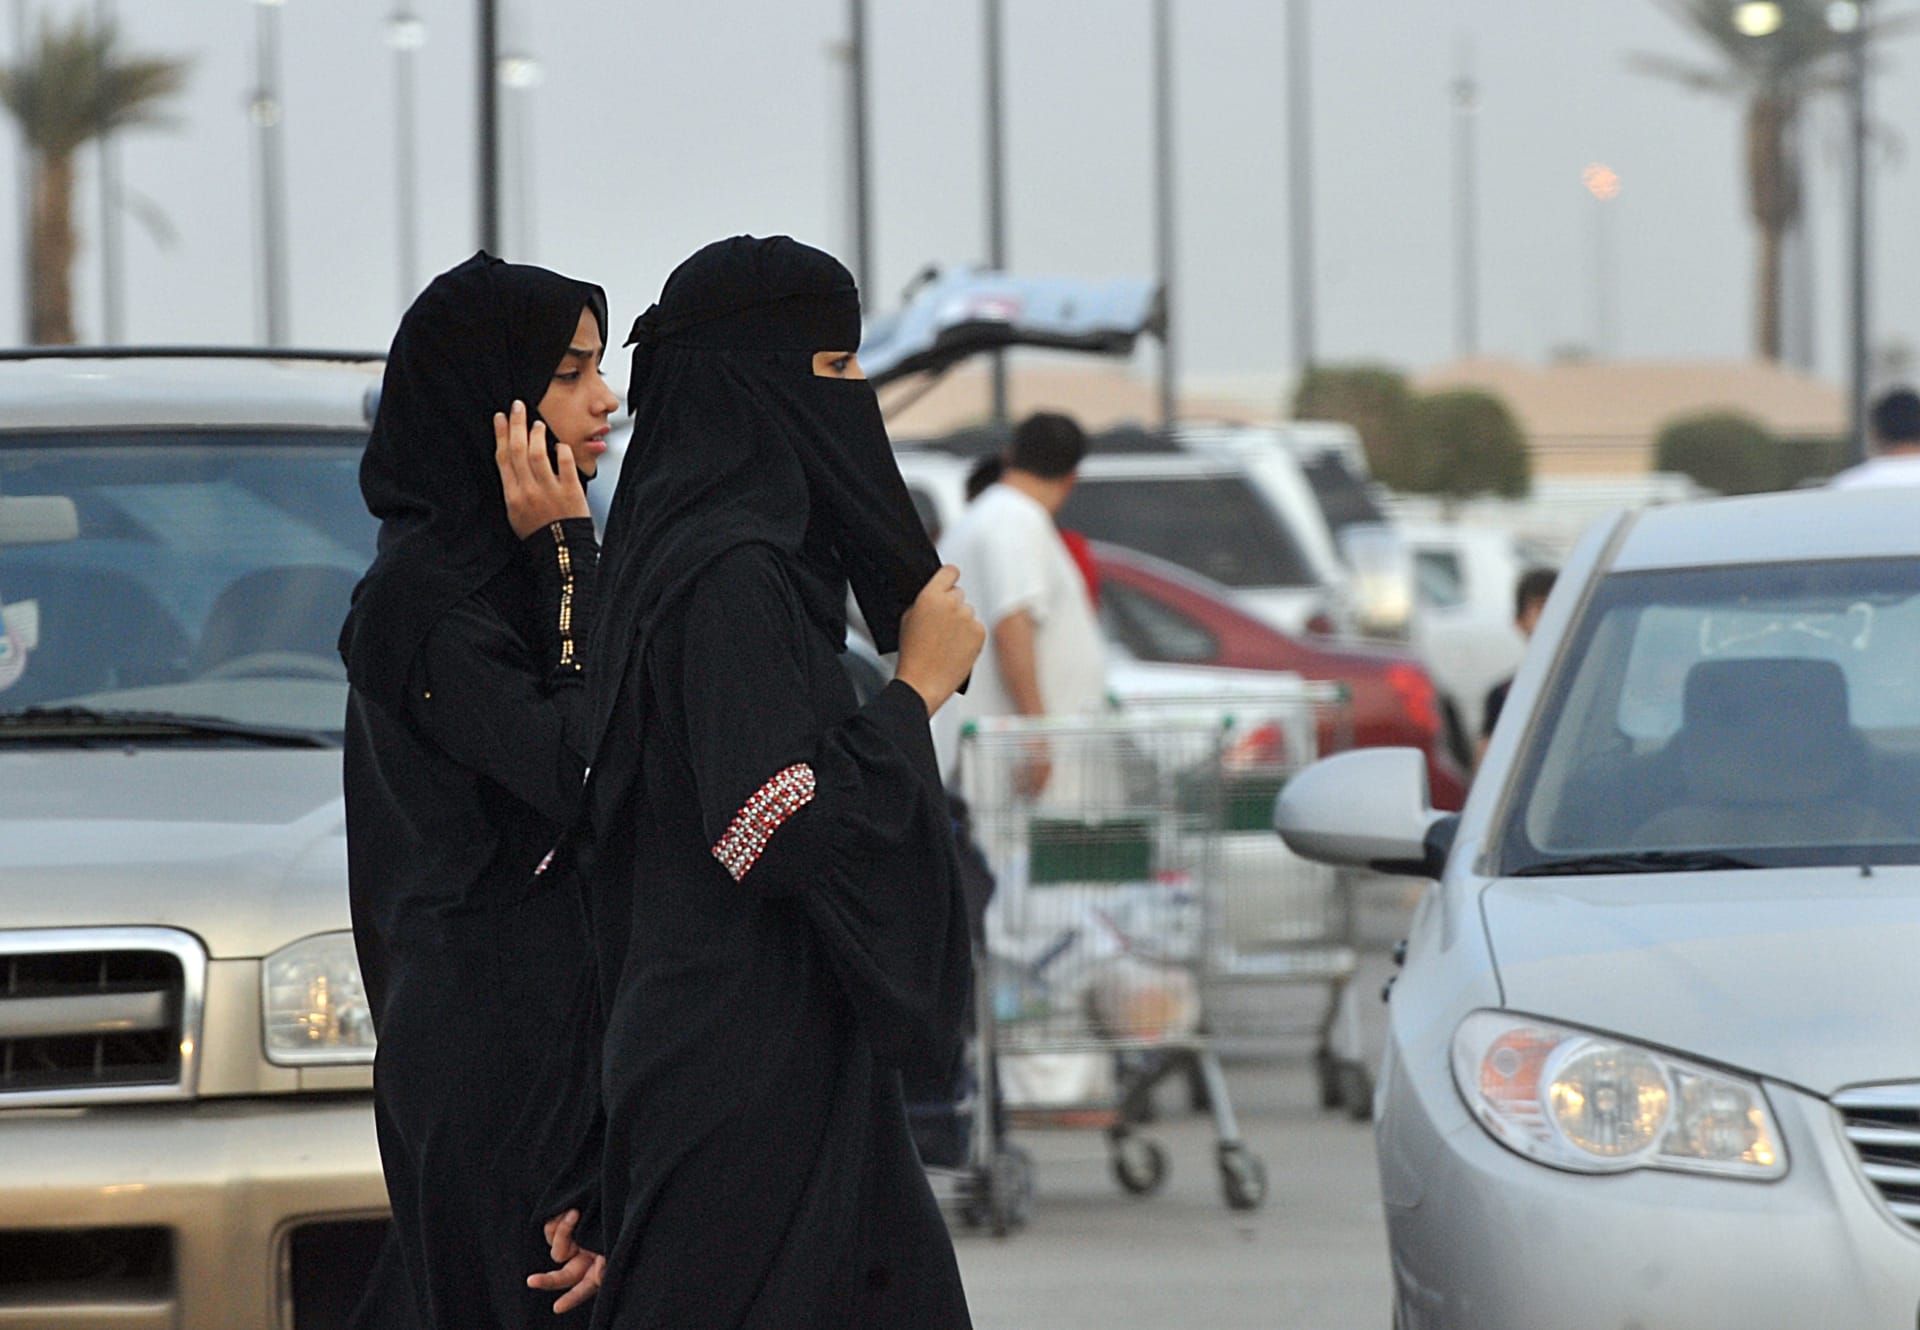 عضو بمجلس الشورى السعودي توقعت في مقابلة مع CNN صدور أمر ملكي بالسماح للمرأة بالقيادة